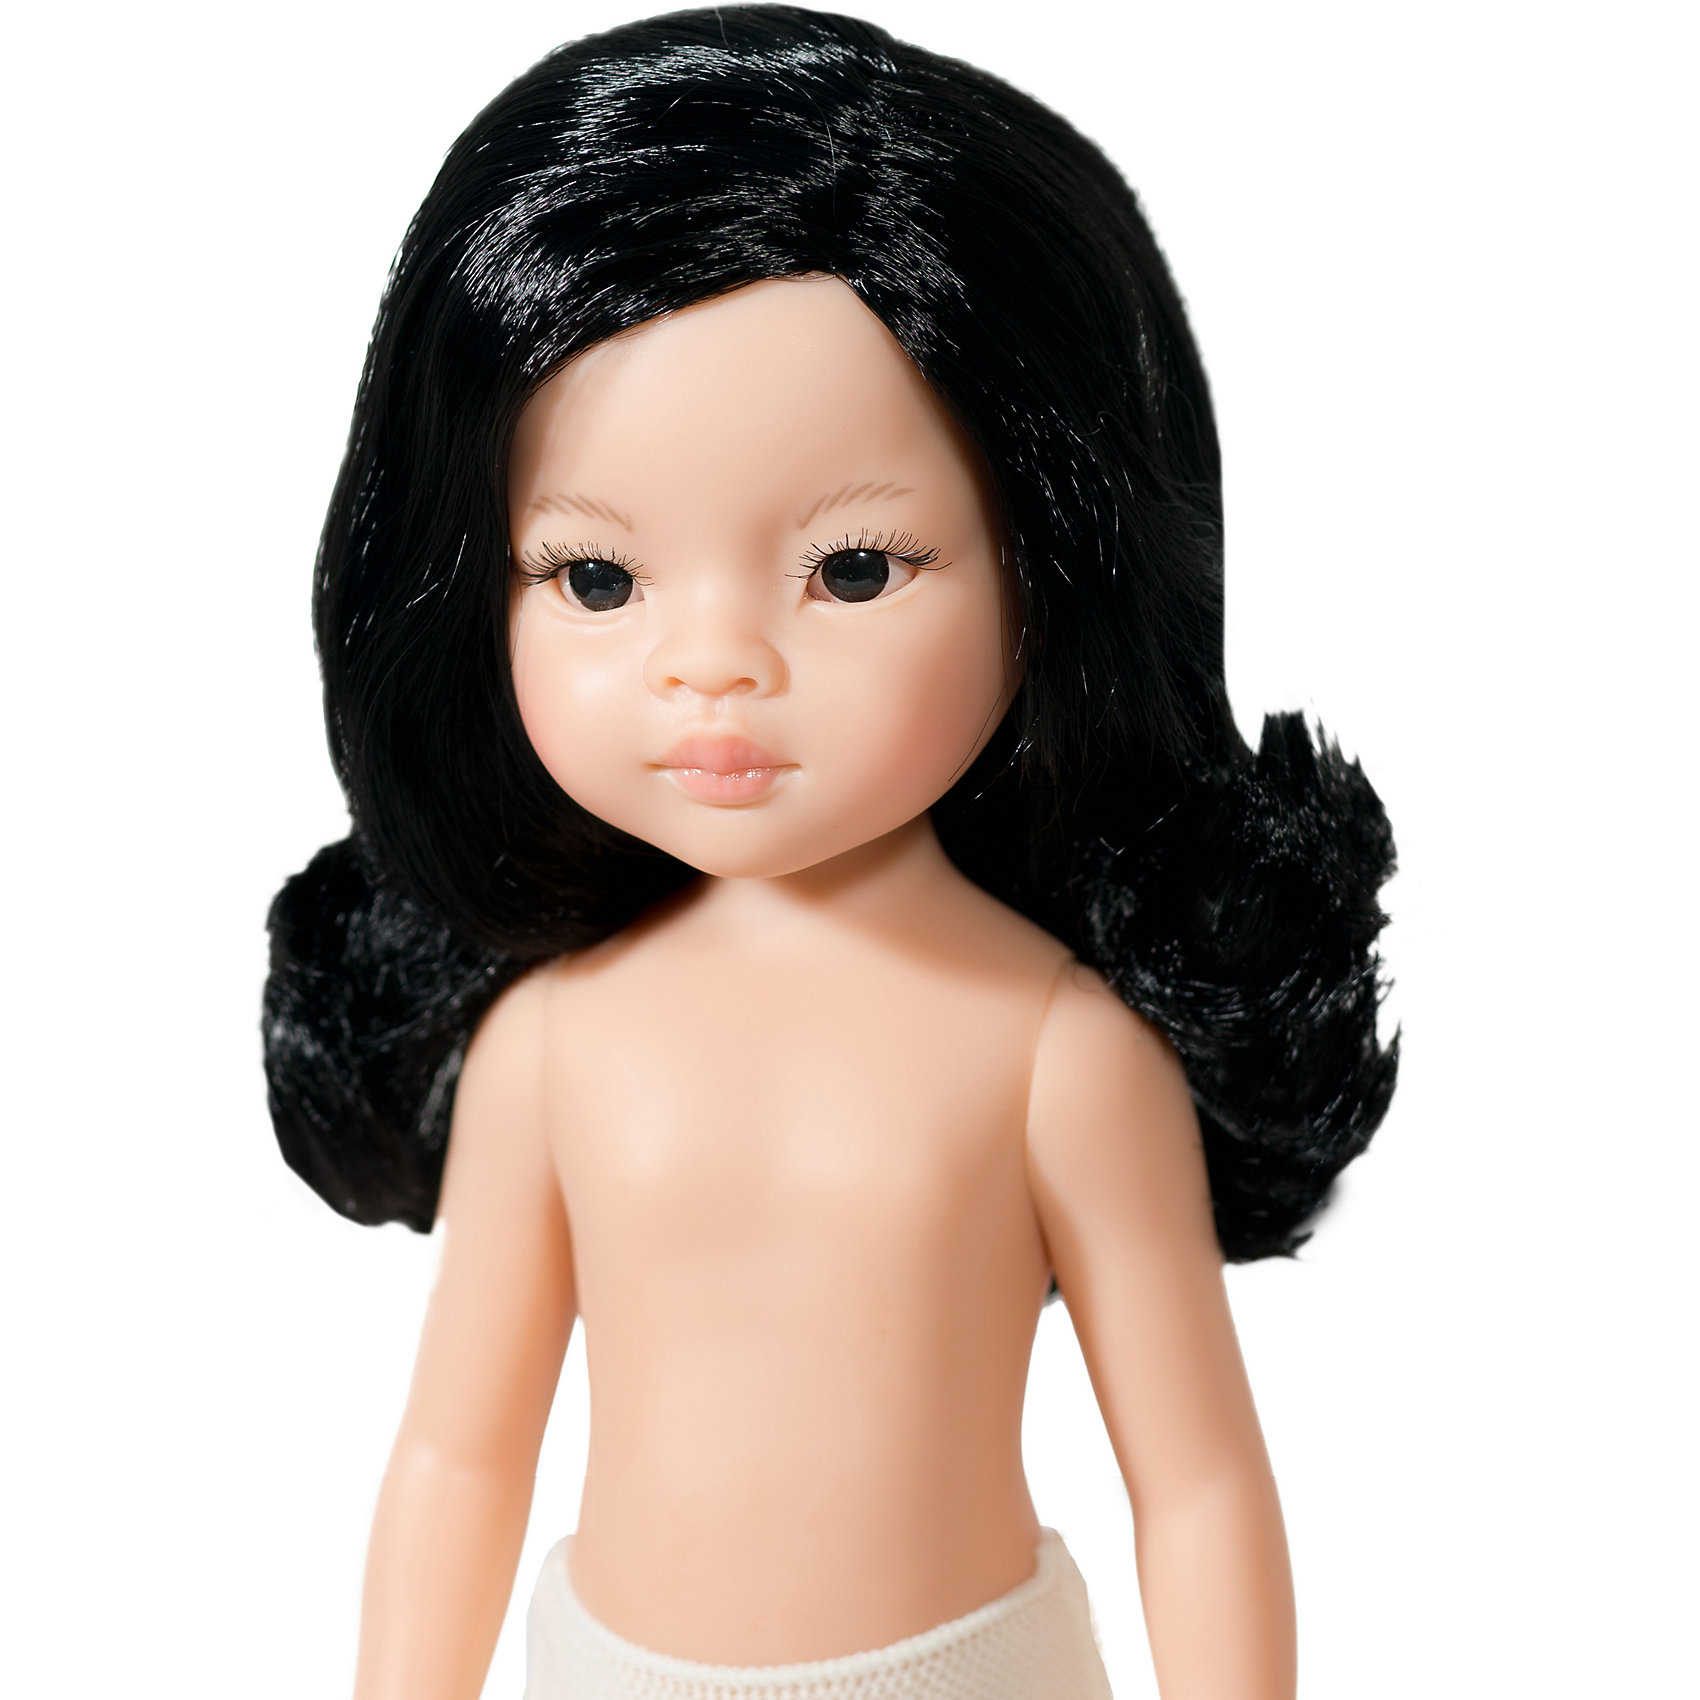 Кукла Лиу, волнистые волосы, 32 см Paola Reina 12416979